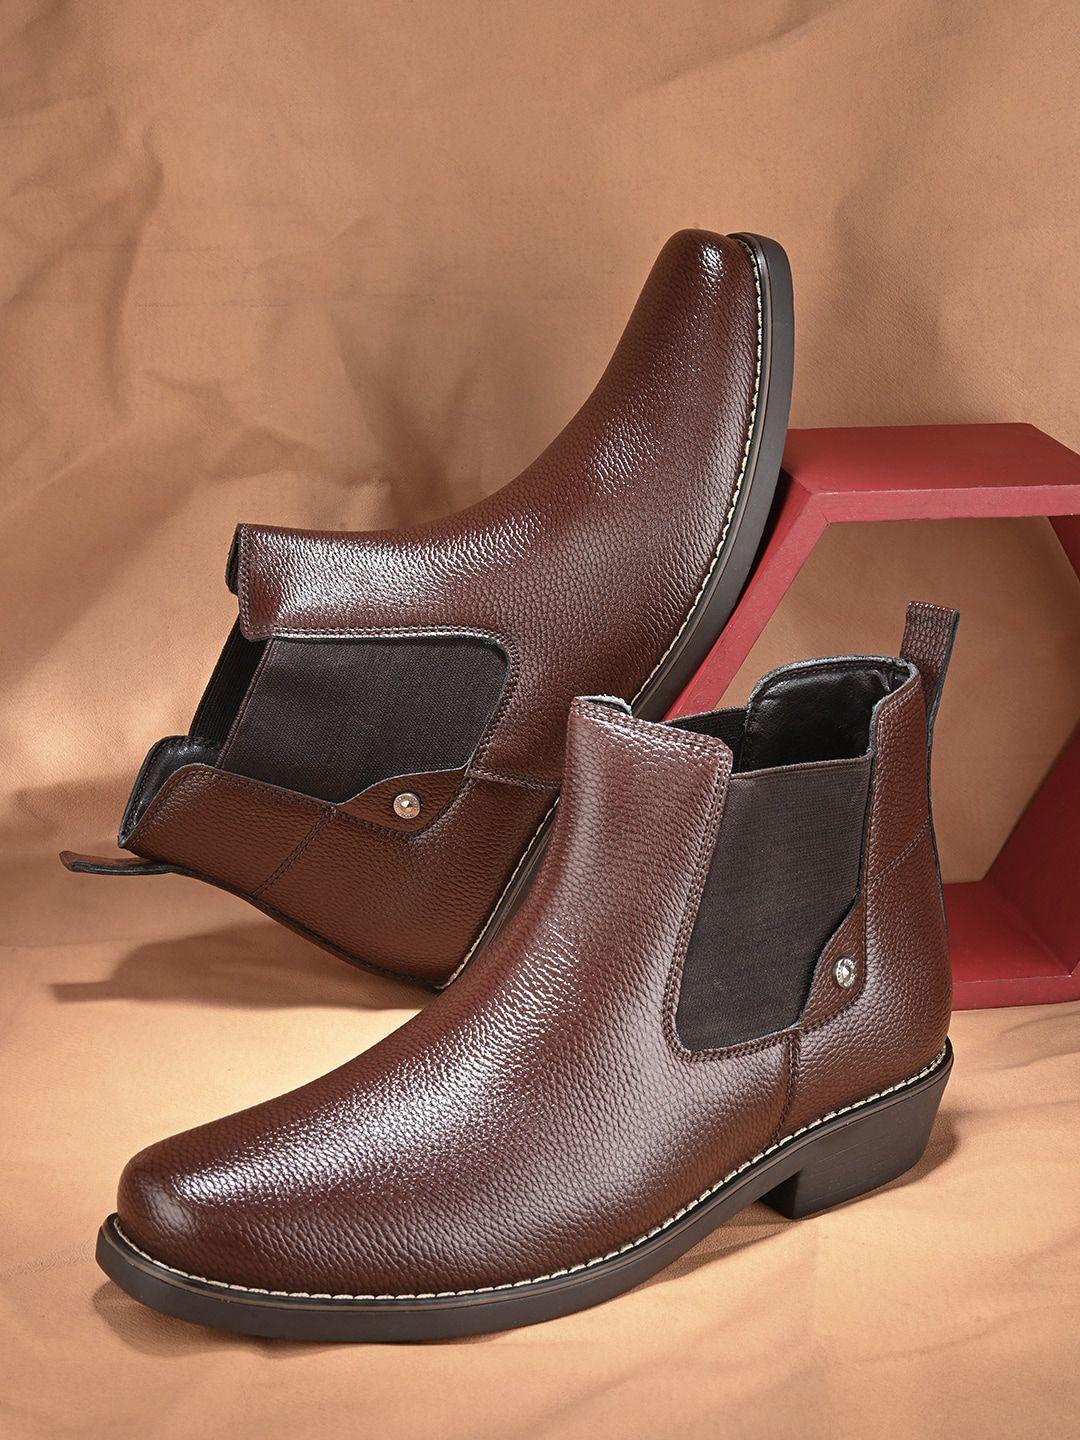 the roadster lifestyle co. men brown mid top block-heel chelsea boots